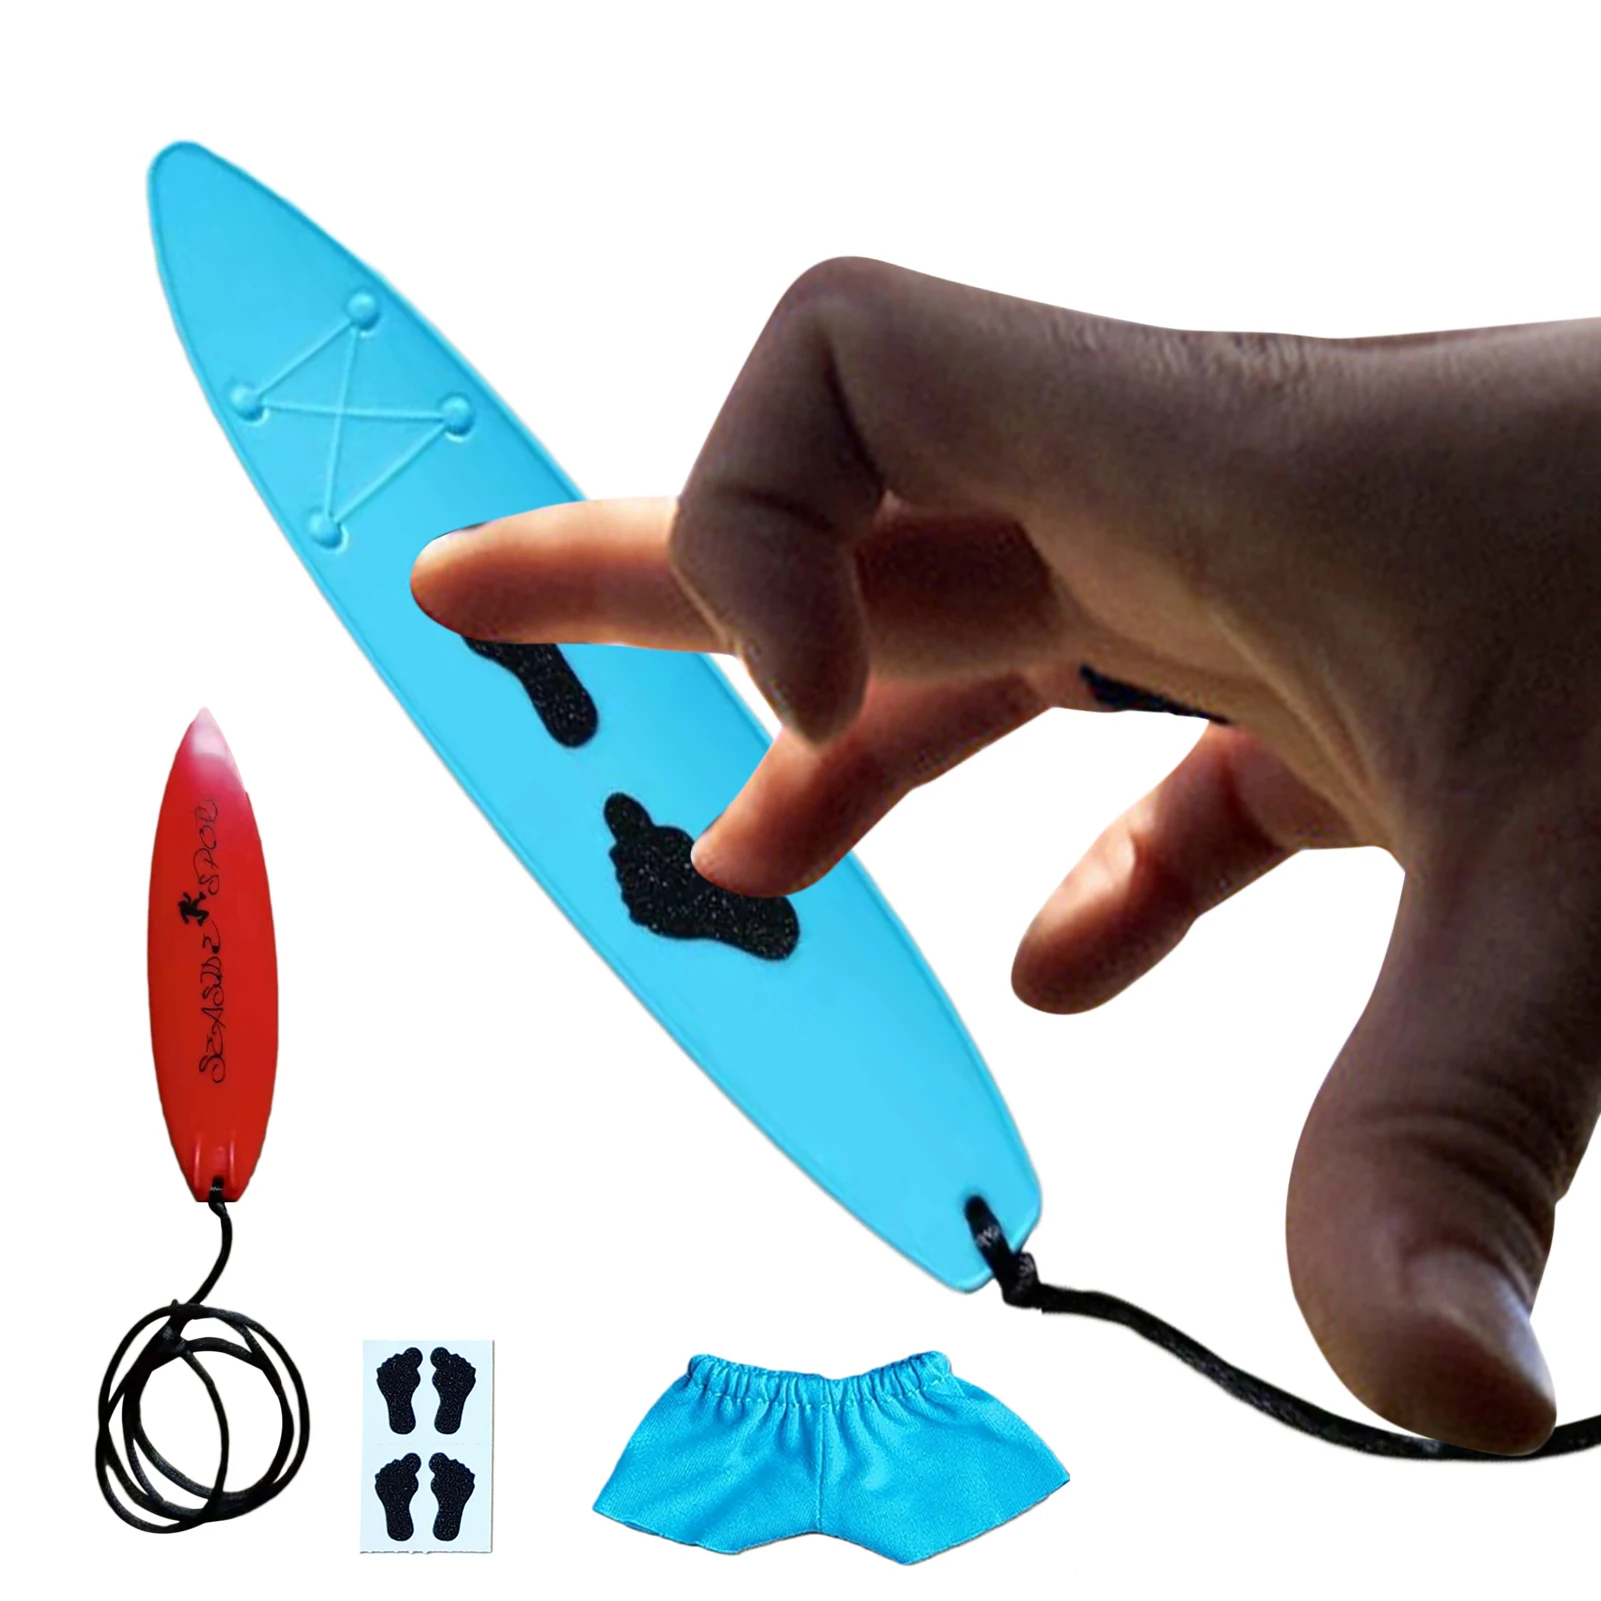 Mini Surfboard Mini Surfboard Toy Fingerboard Toy Finger Surfboard Mini Fingerboard Creative Cool Surfboard Toy For Kids Teens